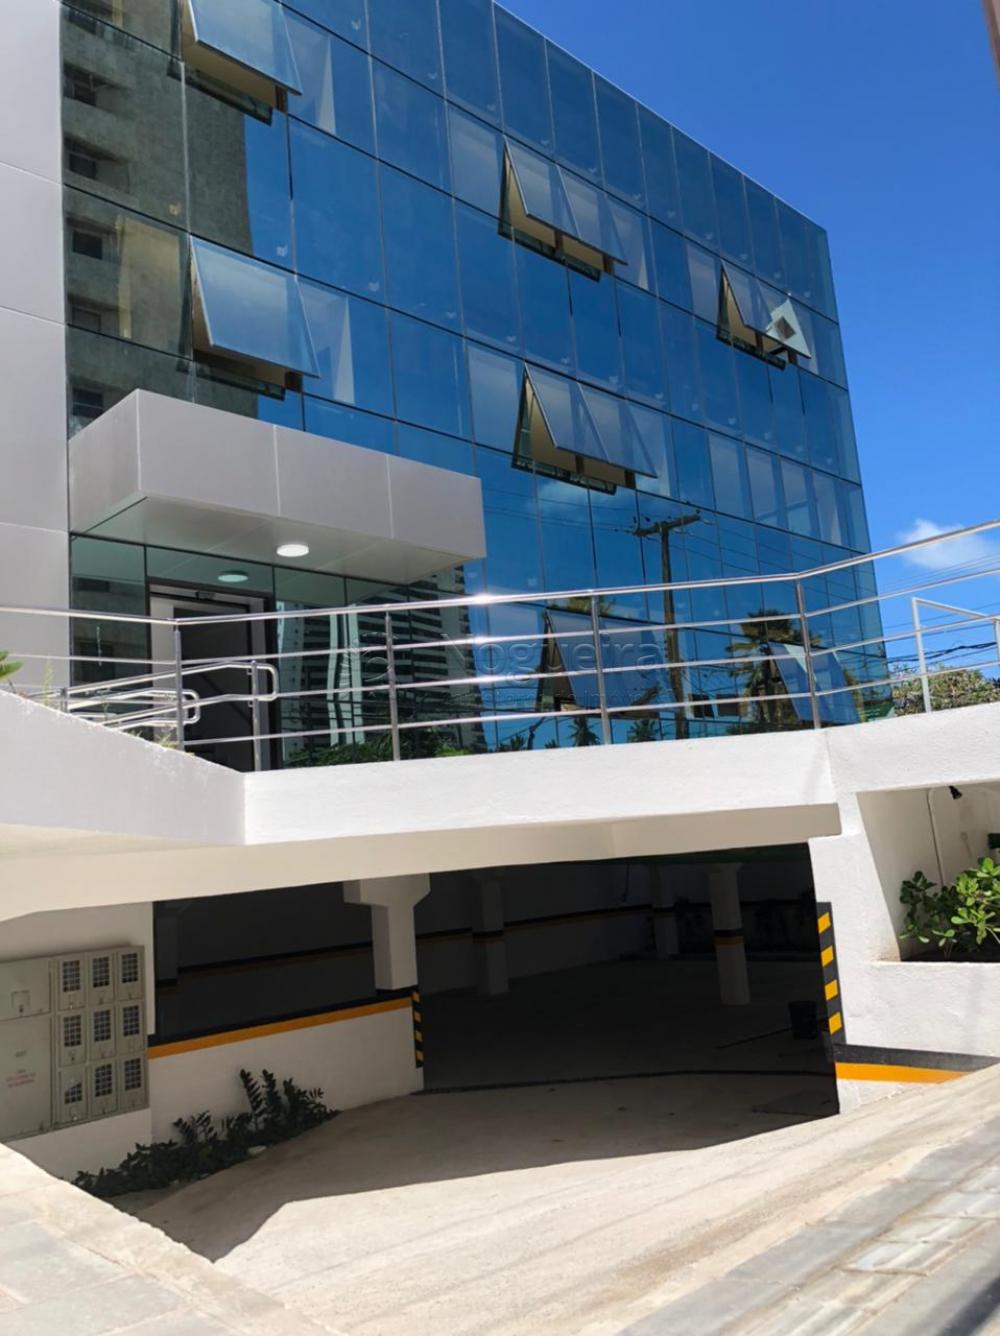 Empresarial JCPJ, localizado na Avenida Bernardo Vieira de Melo, em Piedade.

Empreendimento com 551 m² de área útil, prédio com 05 pavimentos, sendo: subsolo, 03 pavimentos 